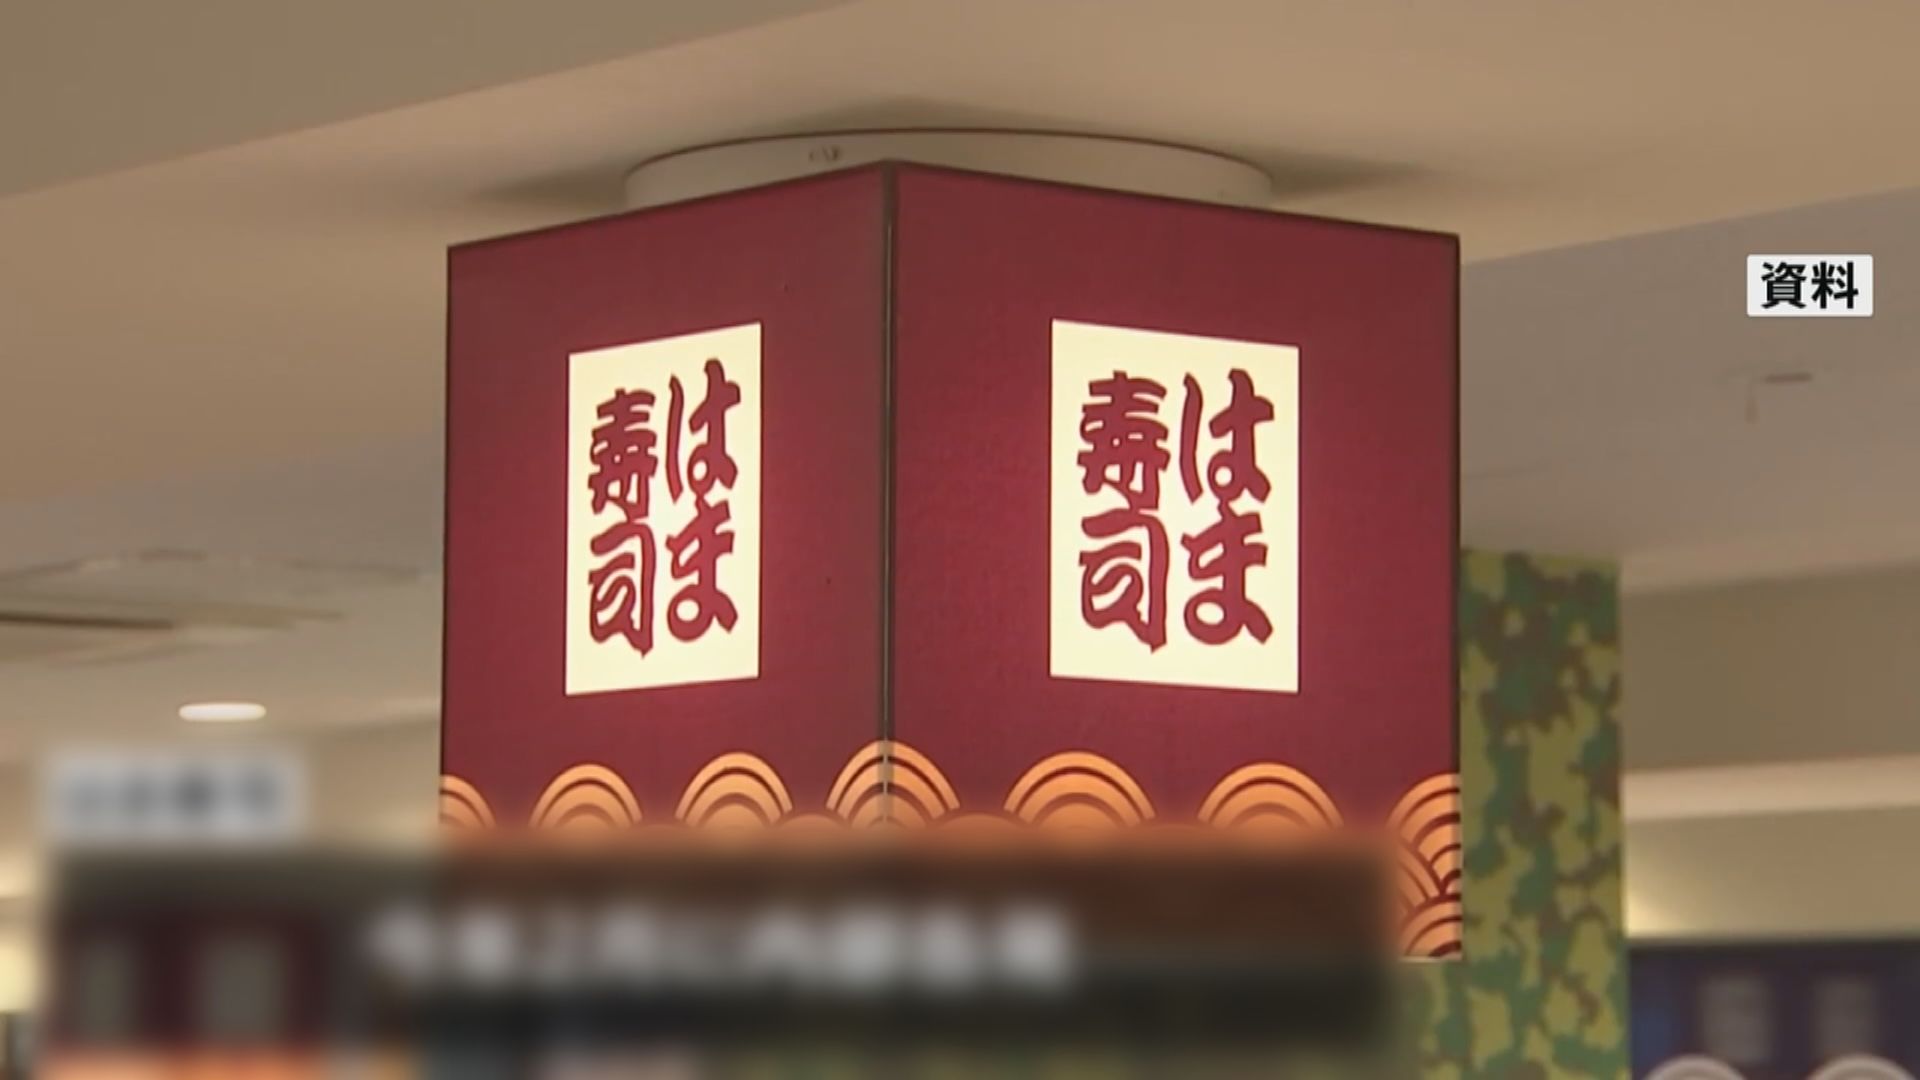 日本濱壽司有分店使用超過自訂期限食材